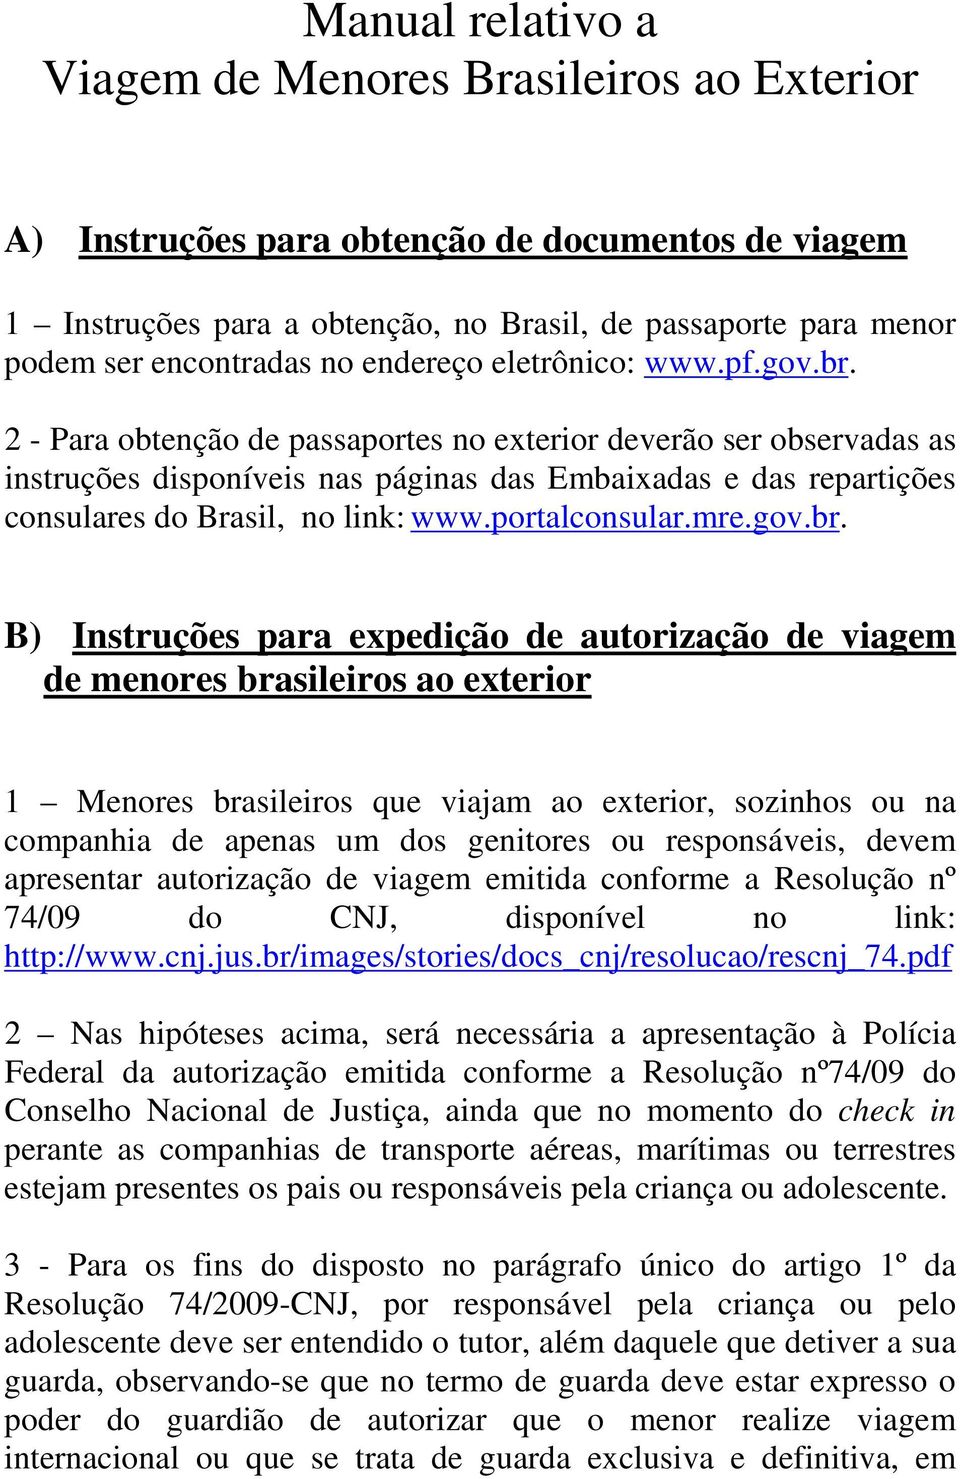 2 - Para obtenção de passaportes no exterior deverão ser observadas as instruções disponíveis nas páginas das Embaixadas e das repartições consulares do Brasil, no link: www.portalconsular.mre.gov.br.